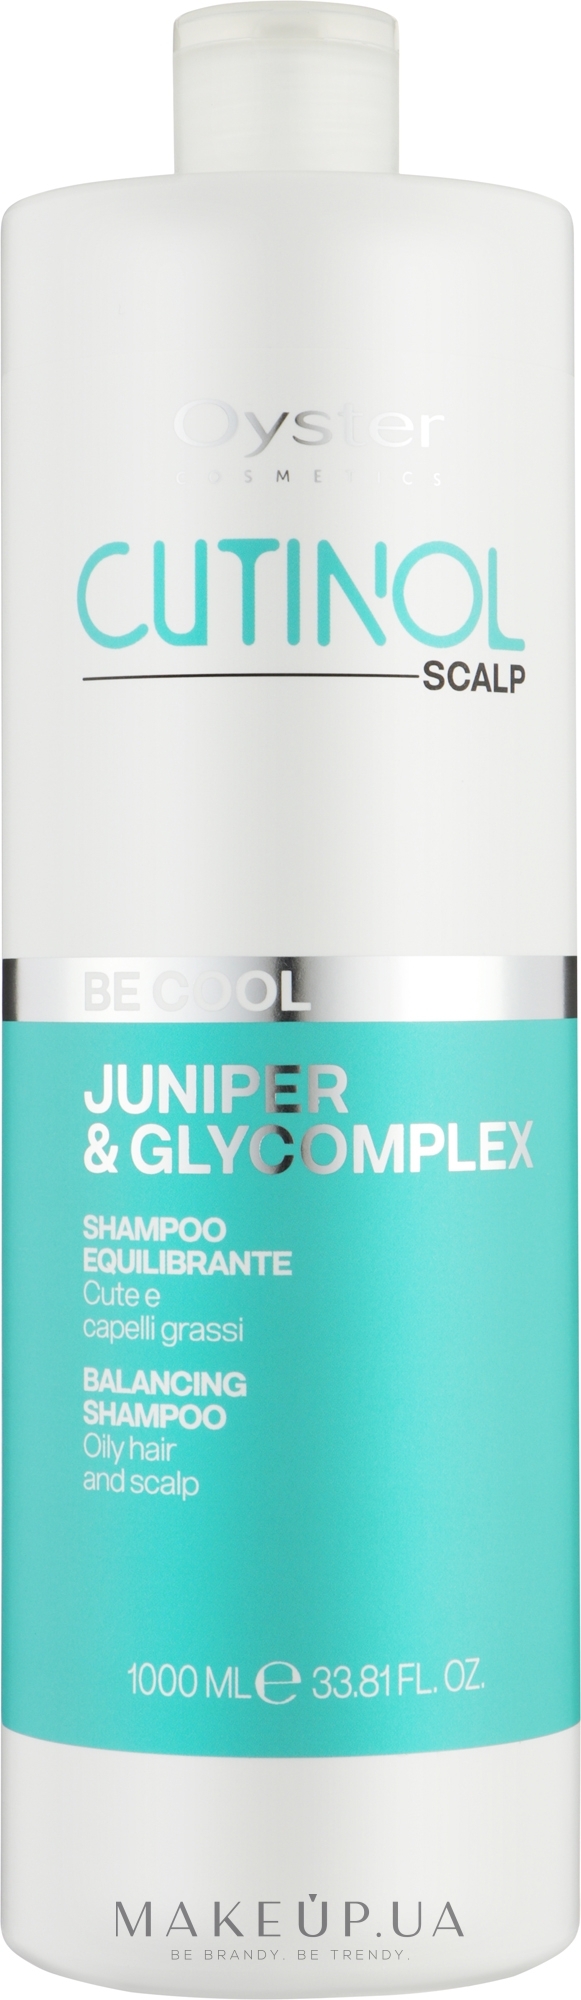 Шампунь для жирного волосся та шкіри голови - Oyster Cosmetics Cutinol Be Cool Shampoo — фото 1000ml